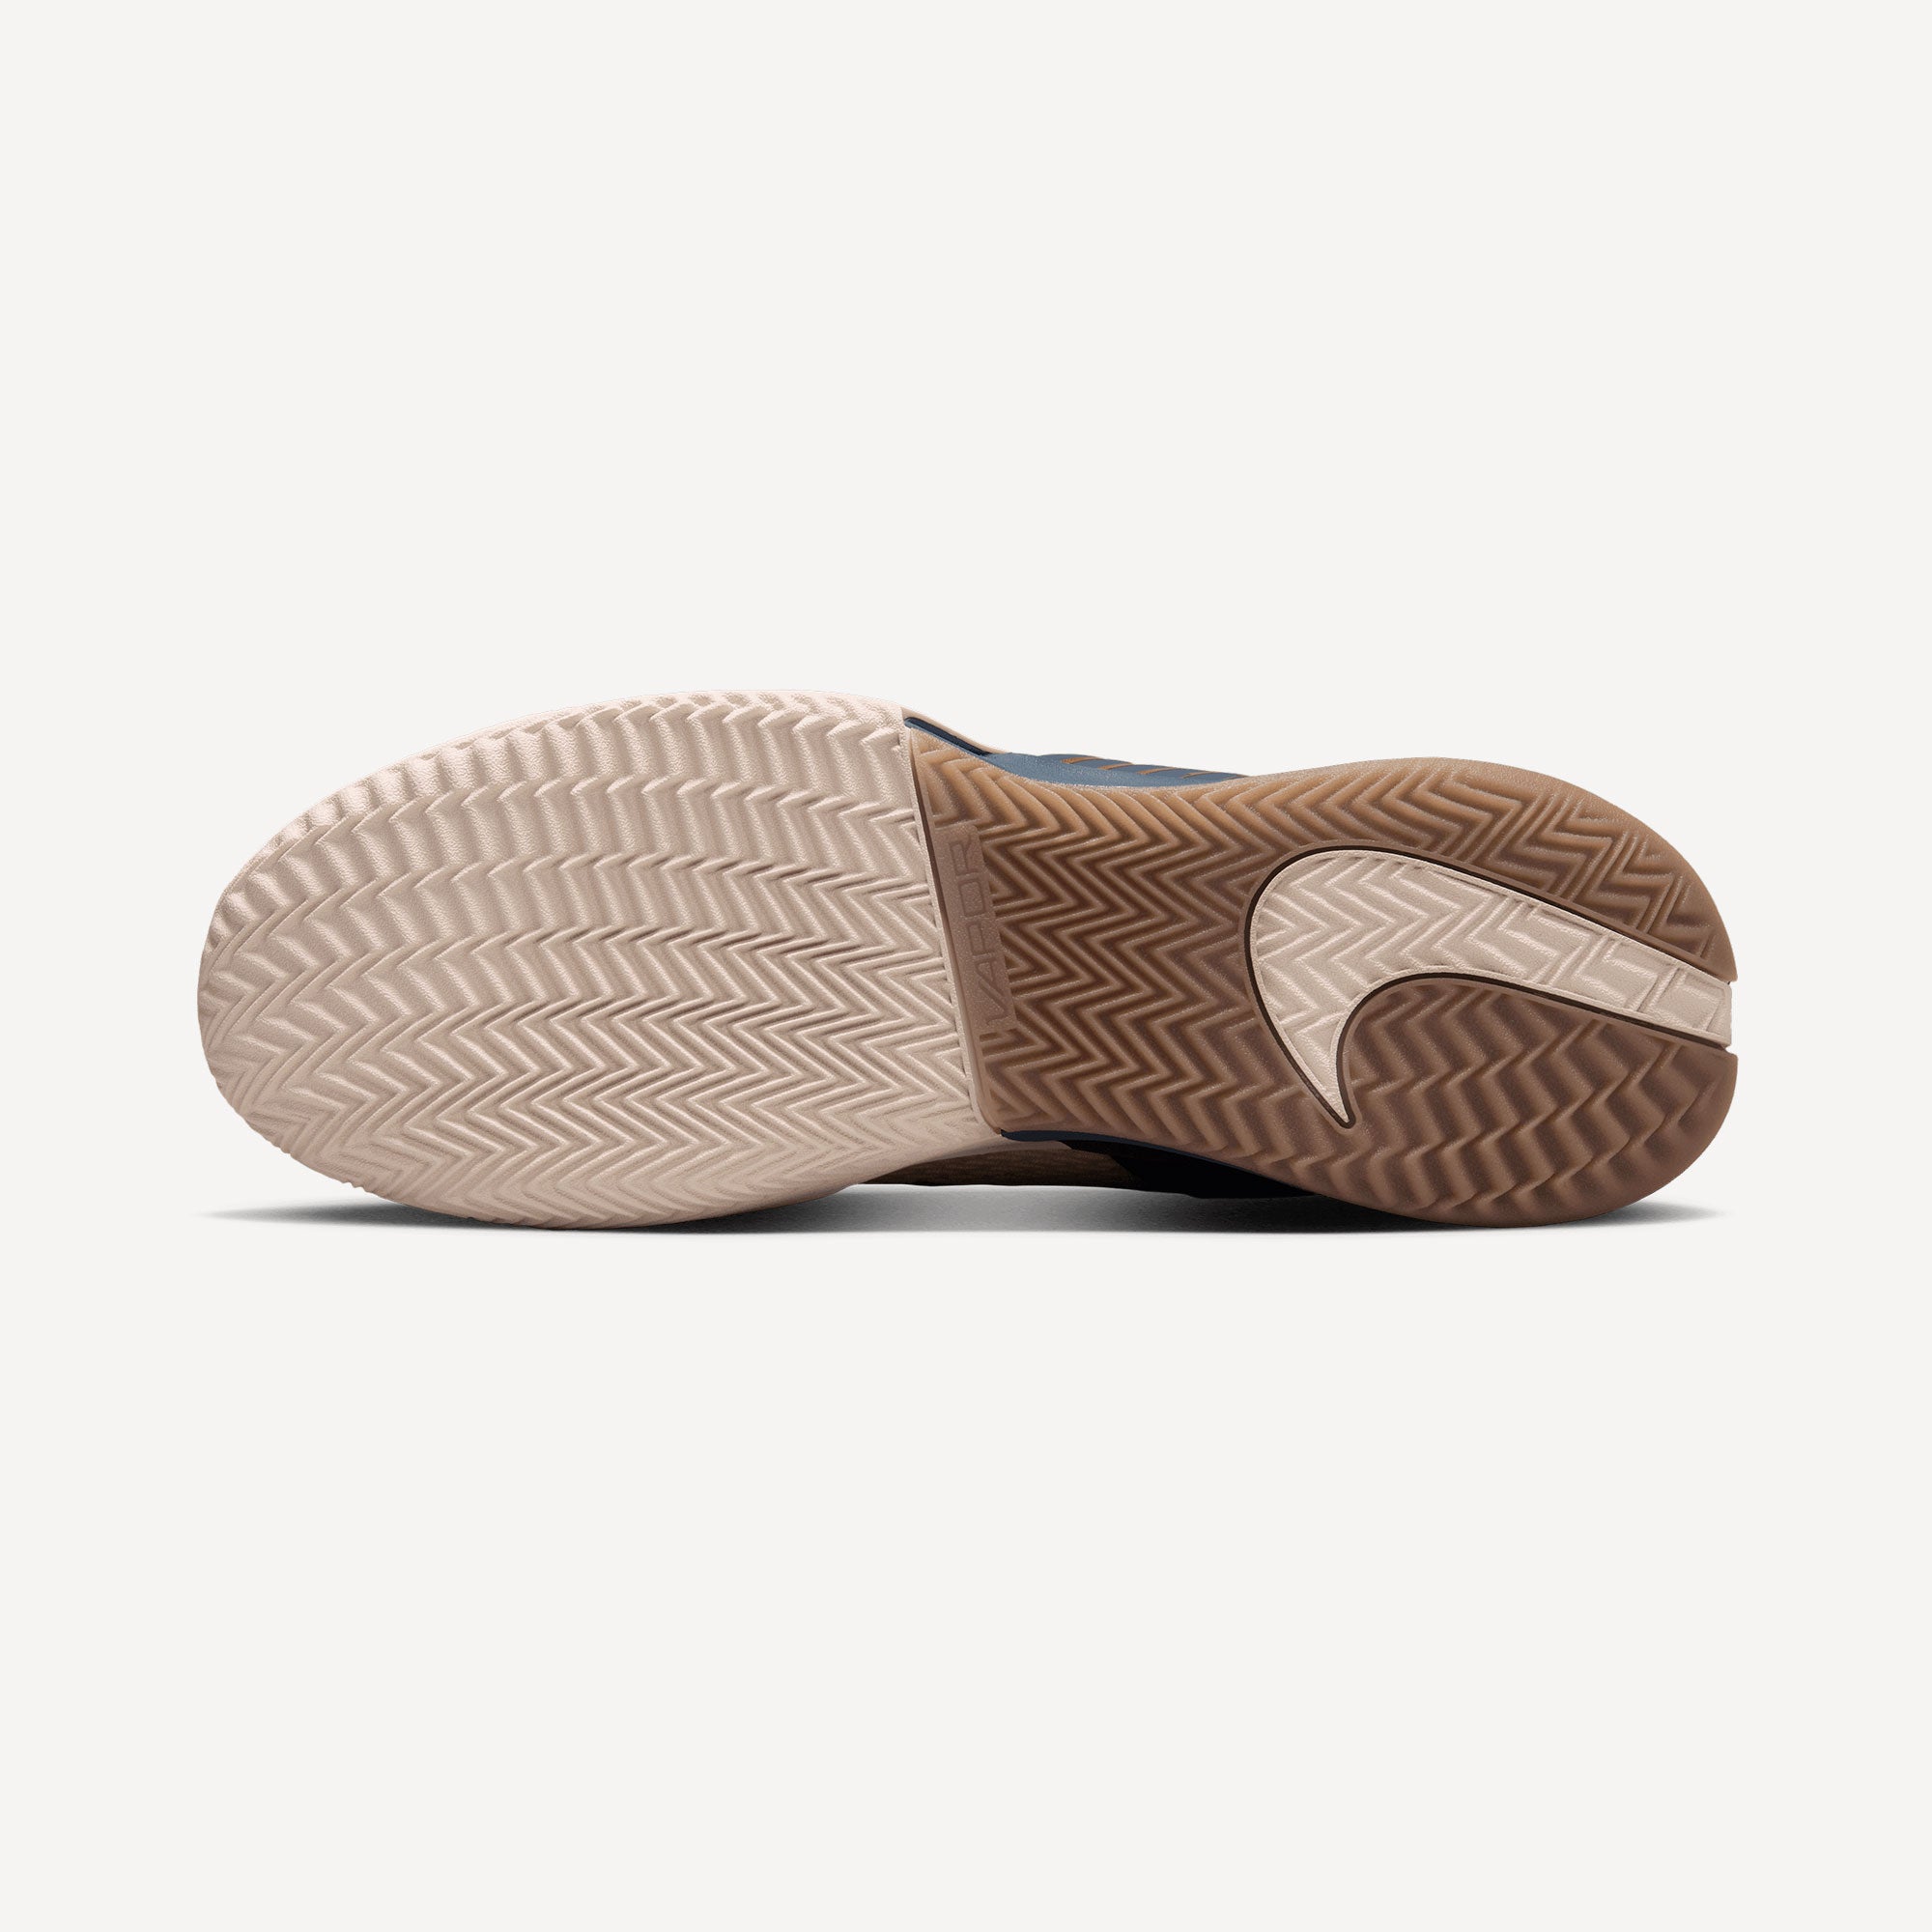 NikeCourt Air Zoom Vapor Pro 2 Premium Men's Clay Court Tennis Shoes - Sand (2)